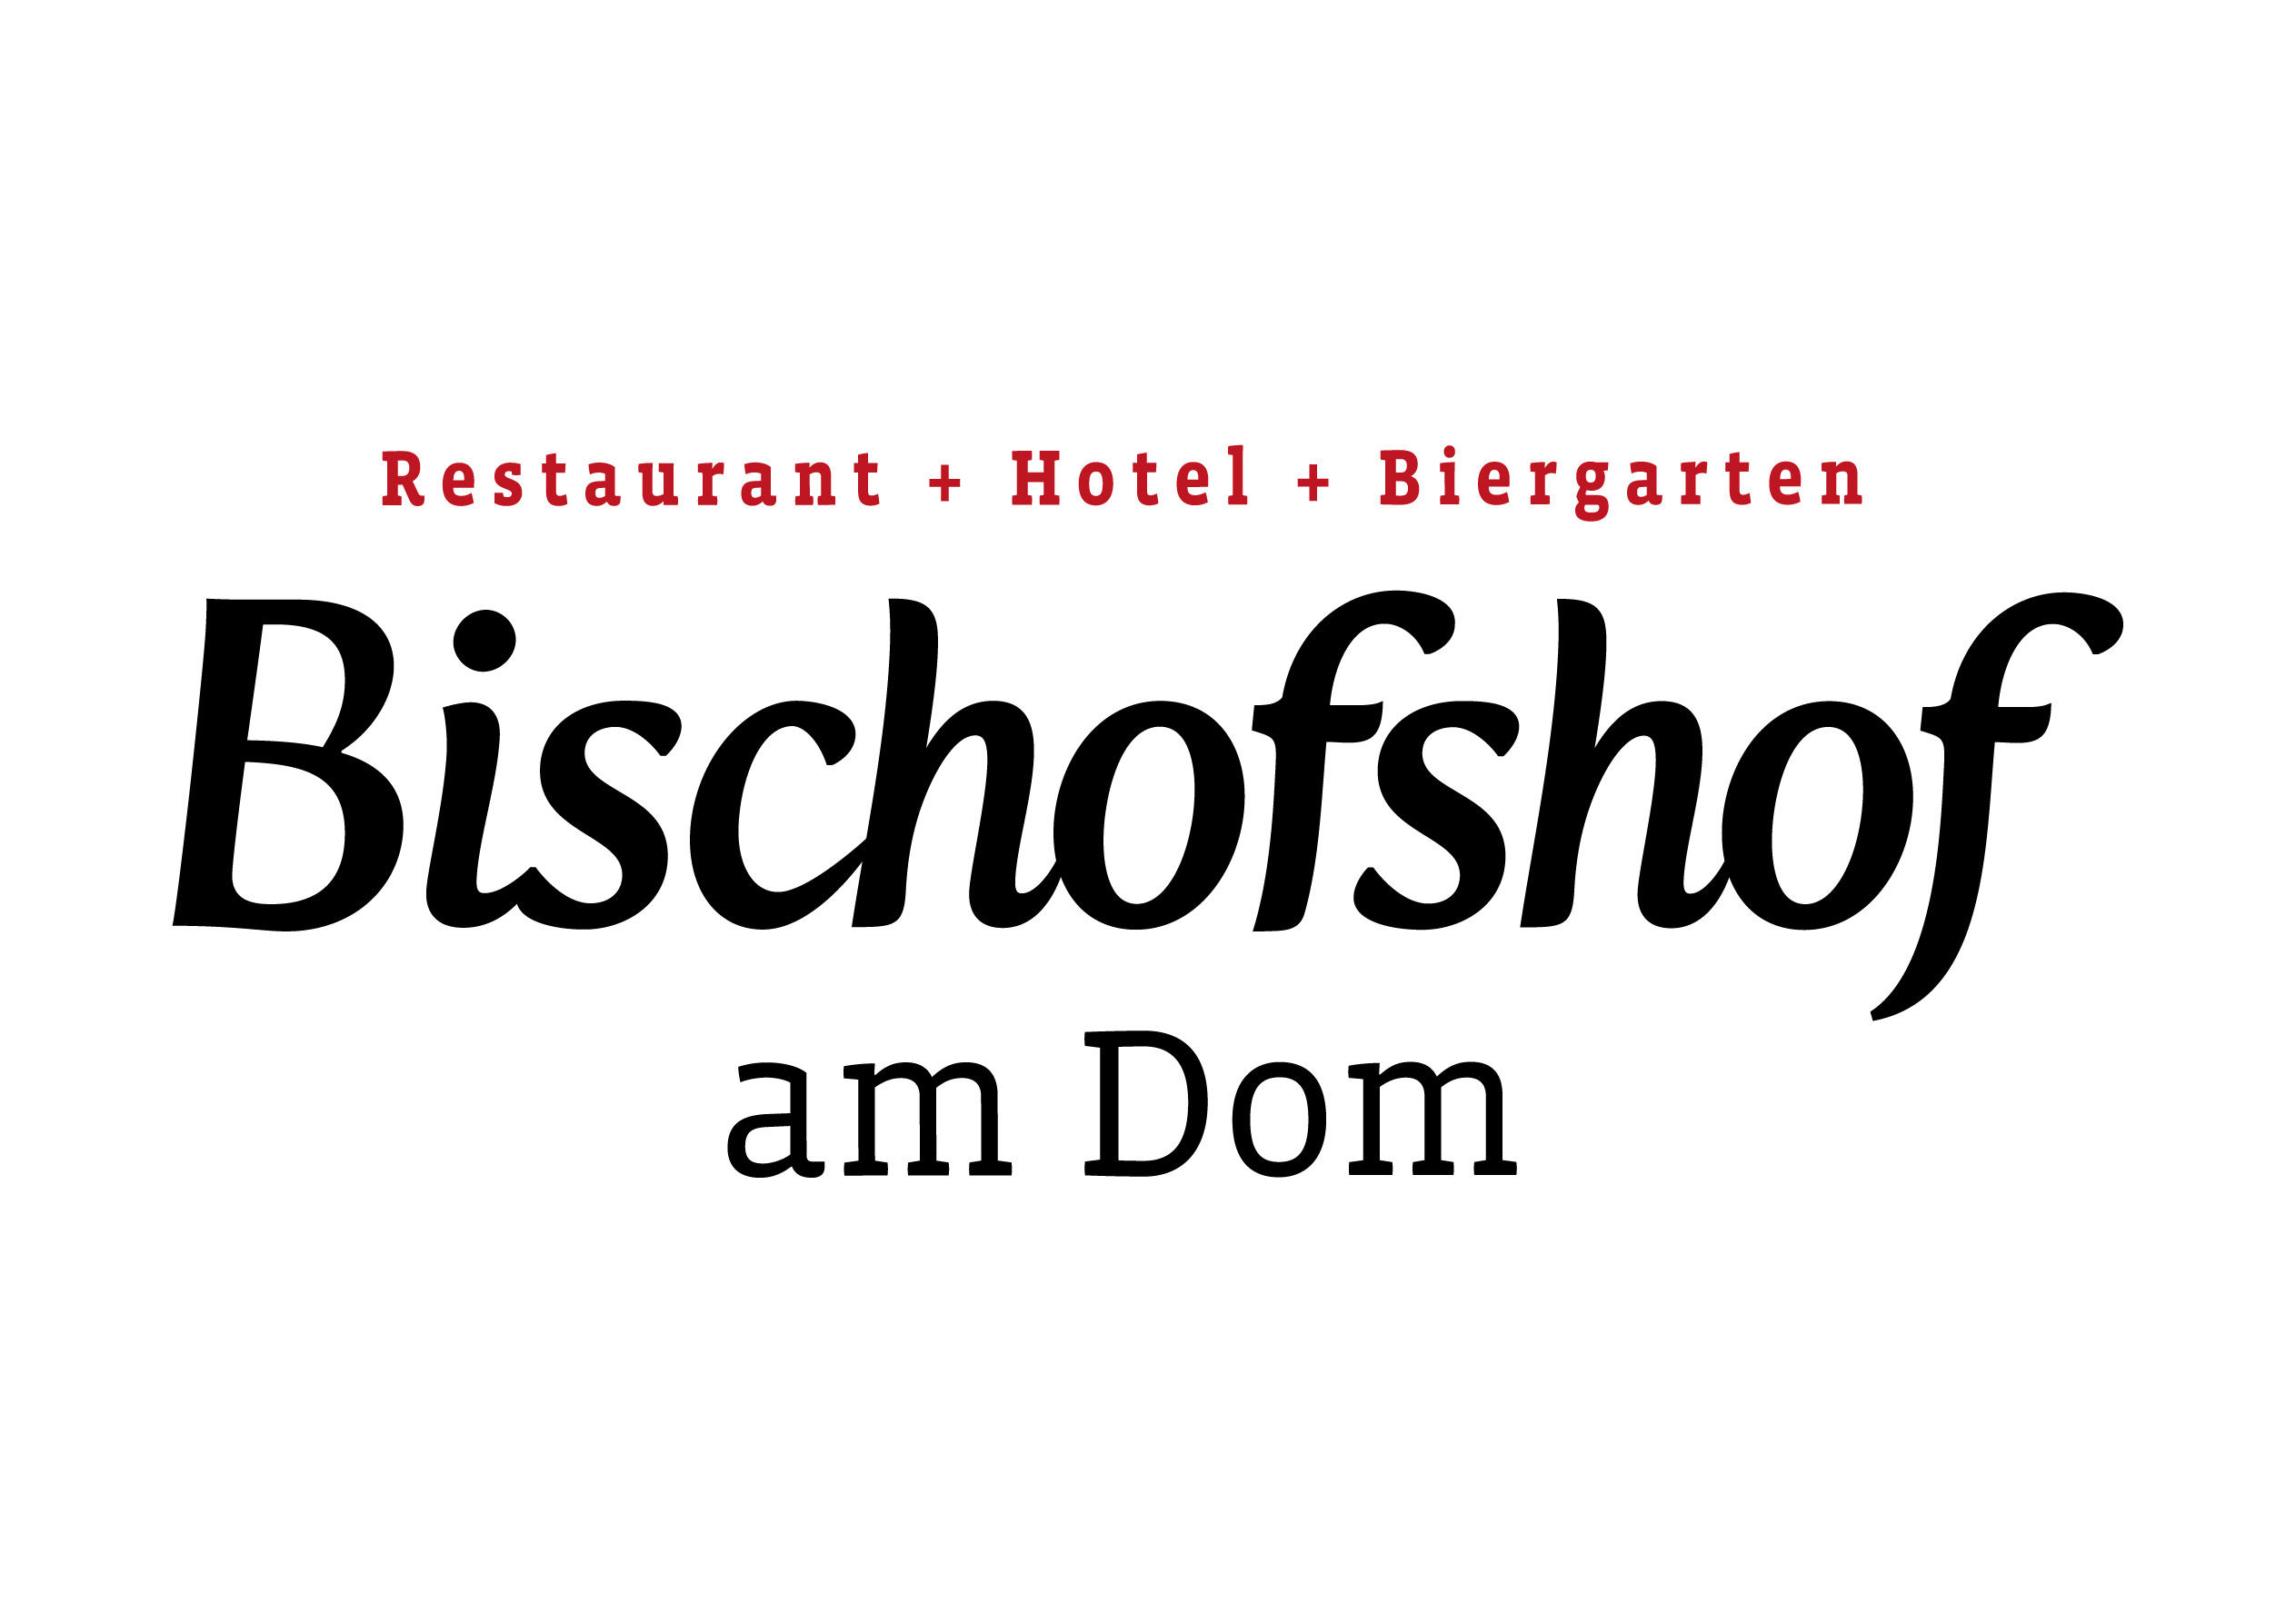 Restaurant Bischofshof am Dom